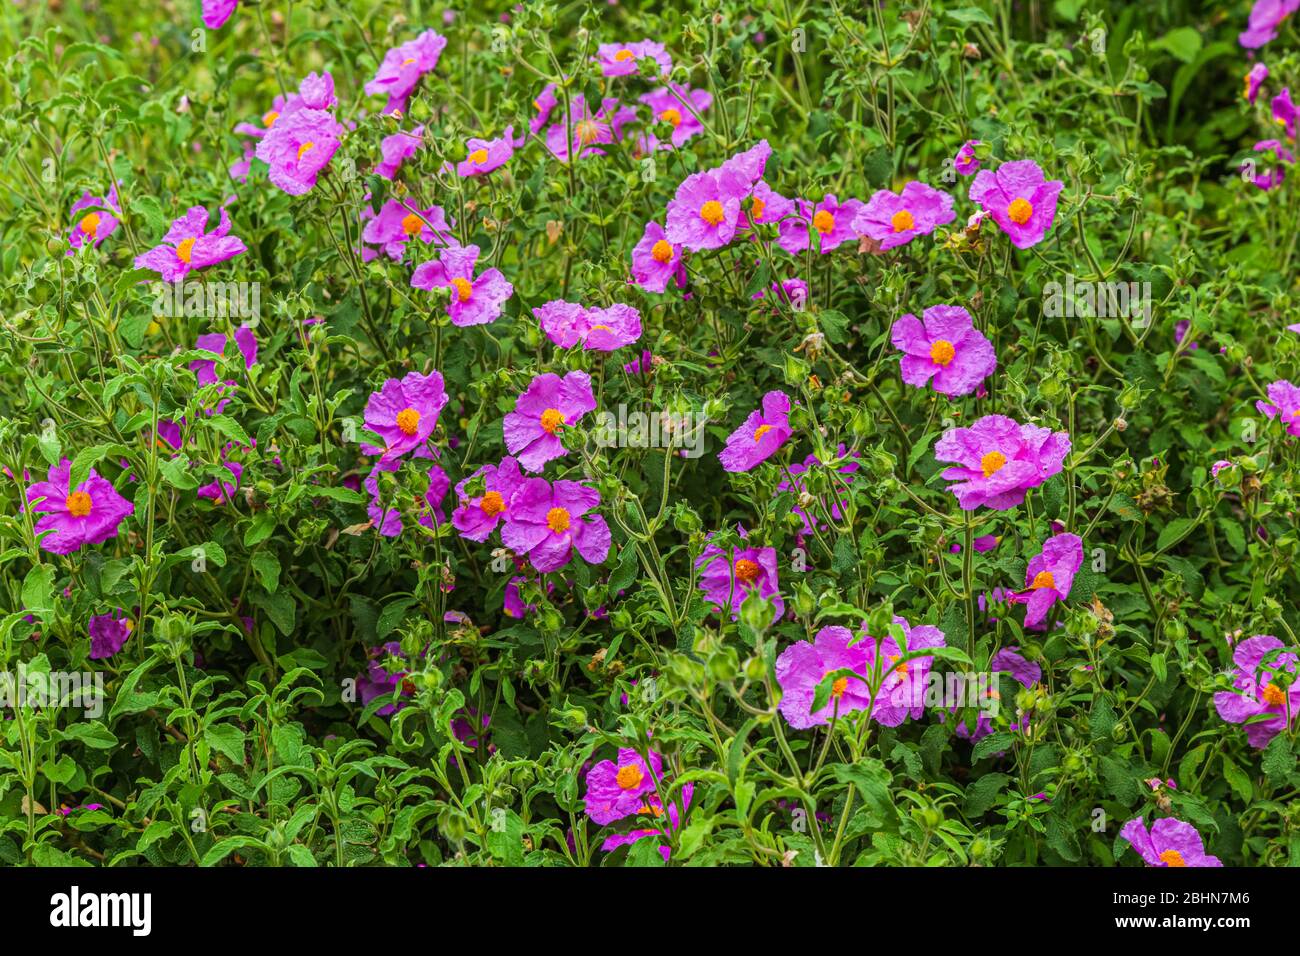 Les rosiers (Cistus creticus), également appelés rosiers de roc, sont une espèce de plante de shrubby dans la famille des cistaceae. Banque D'Images